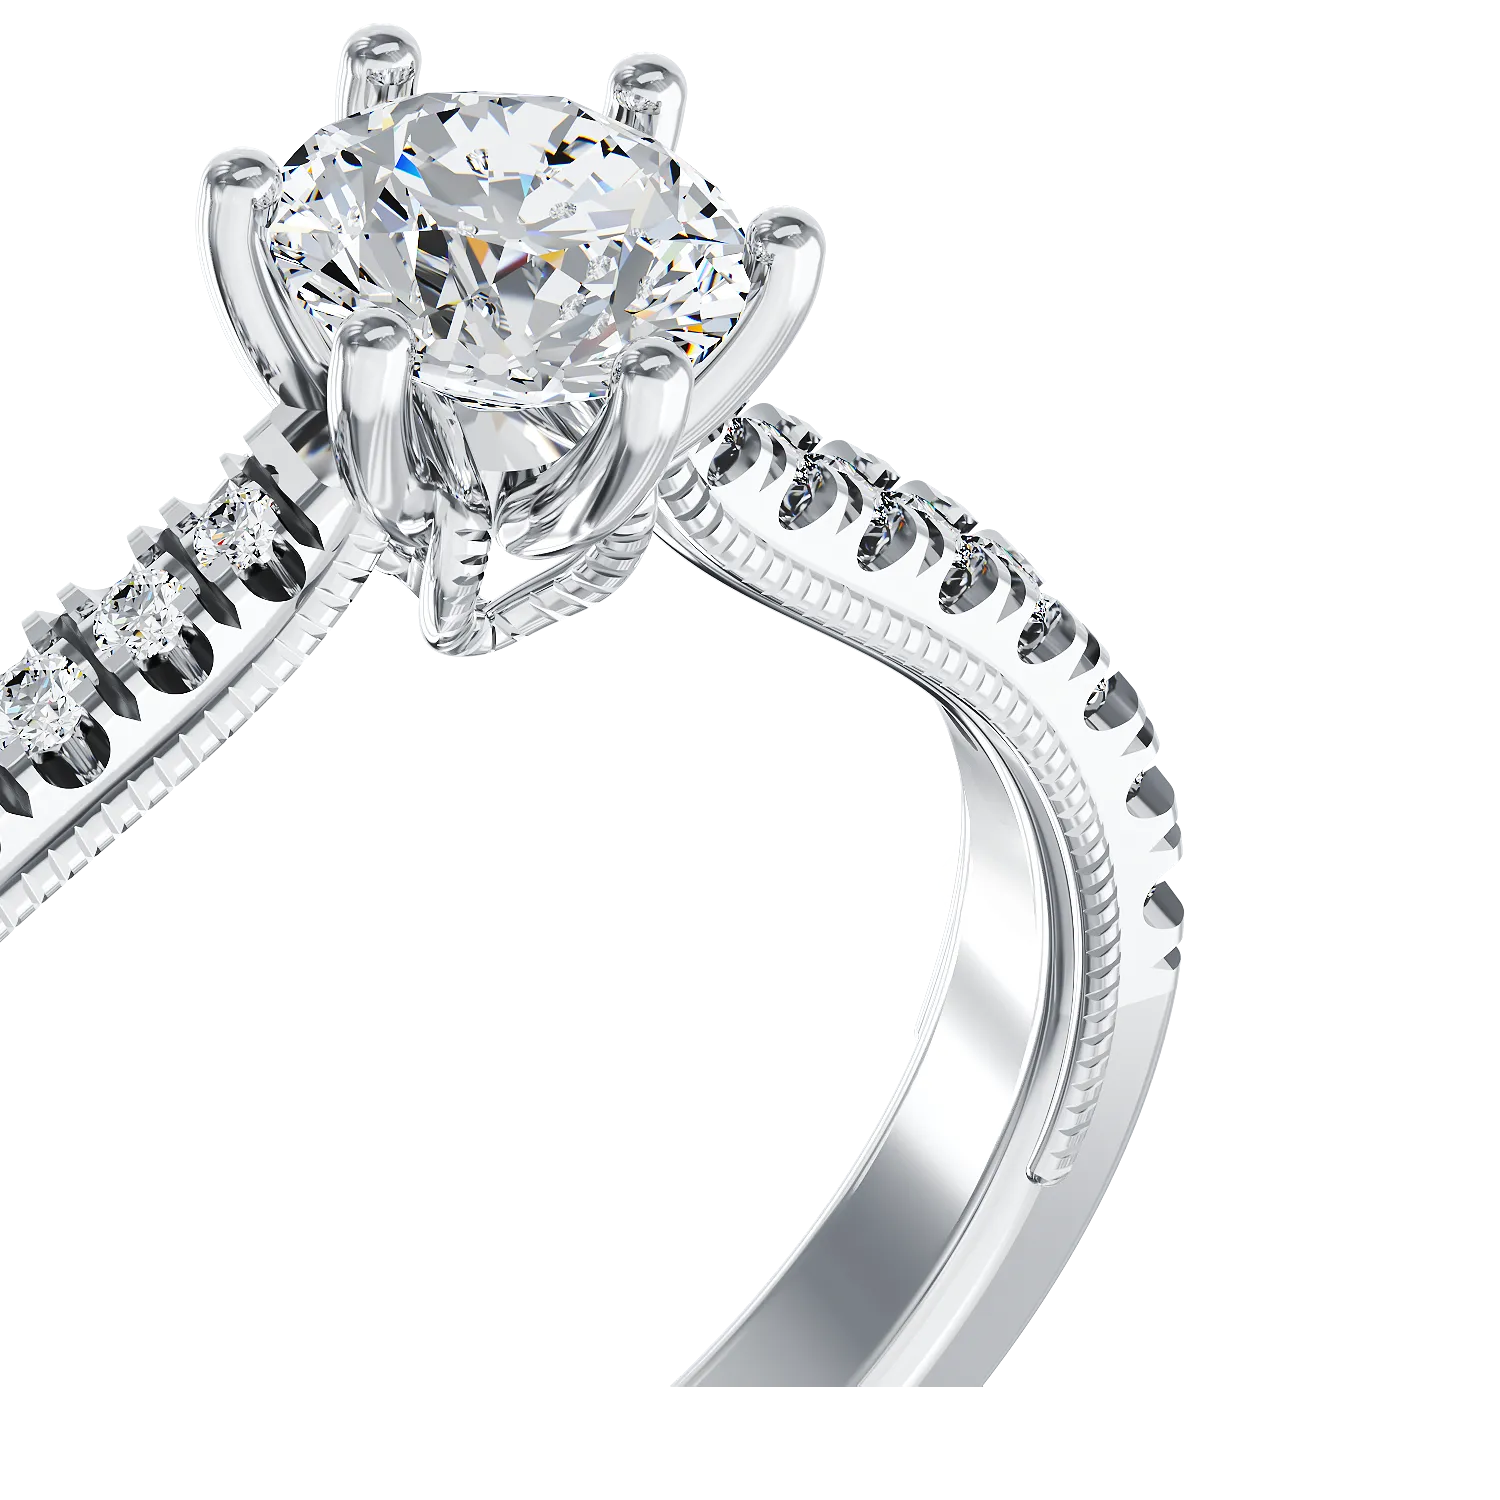 Eljegyzési gyűrű 18K-os fehér aranyból 0,24ct gyémánttal és 0,18ct gyémánttal. Gramm: 2,51